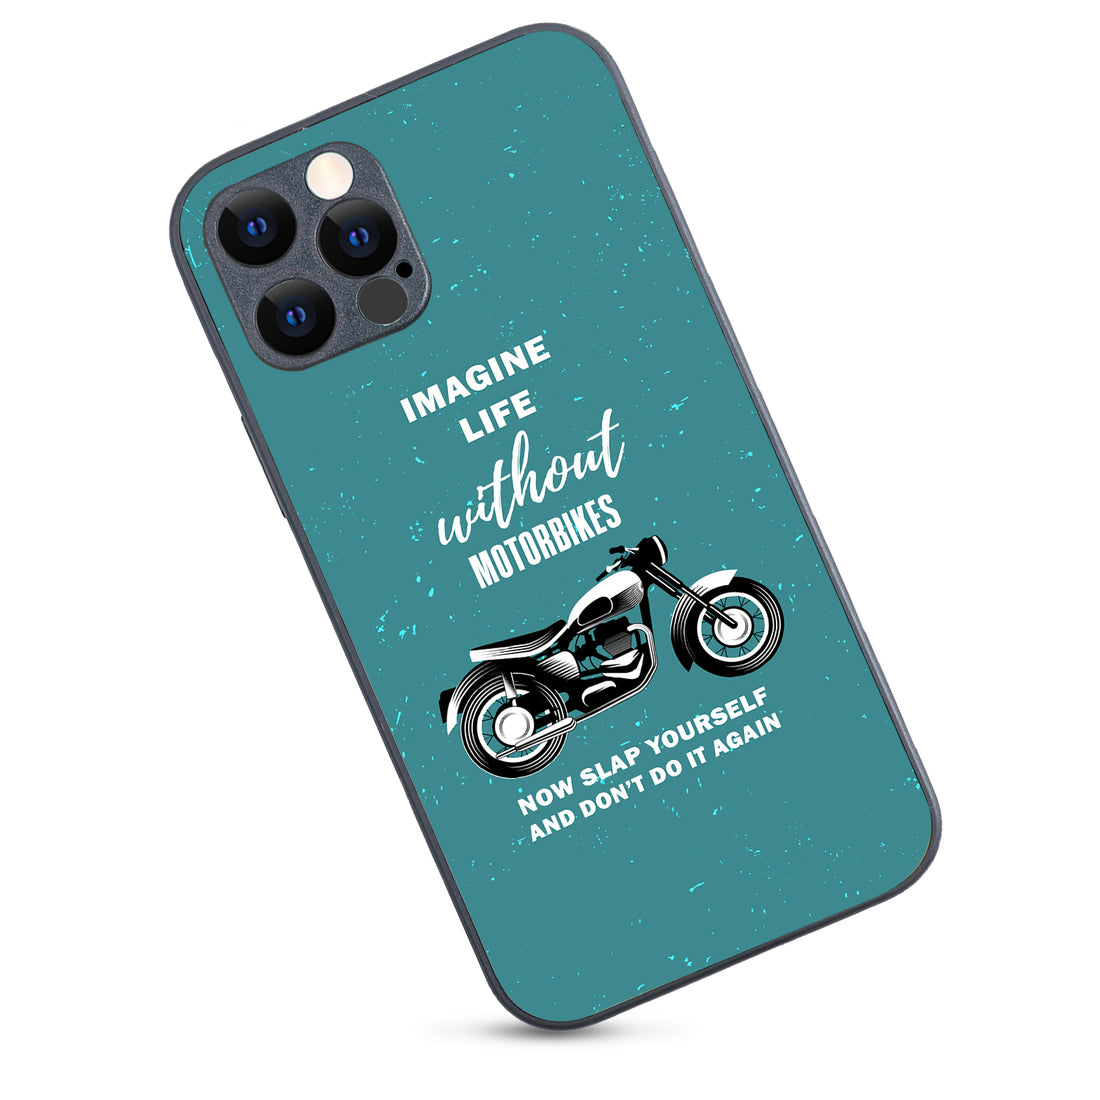 Imagine Life Without MotorbikeBike iPhone 12 Pro Case